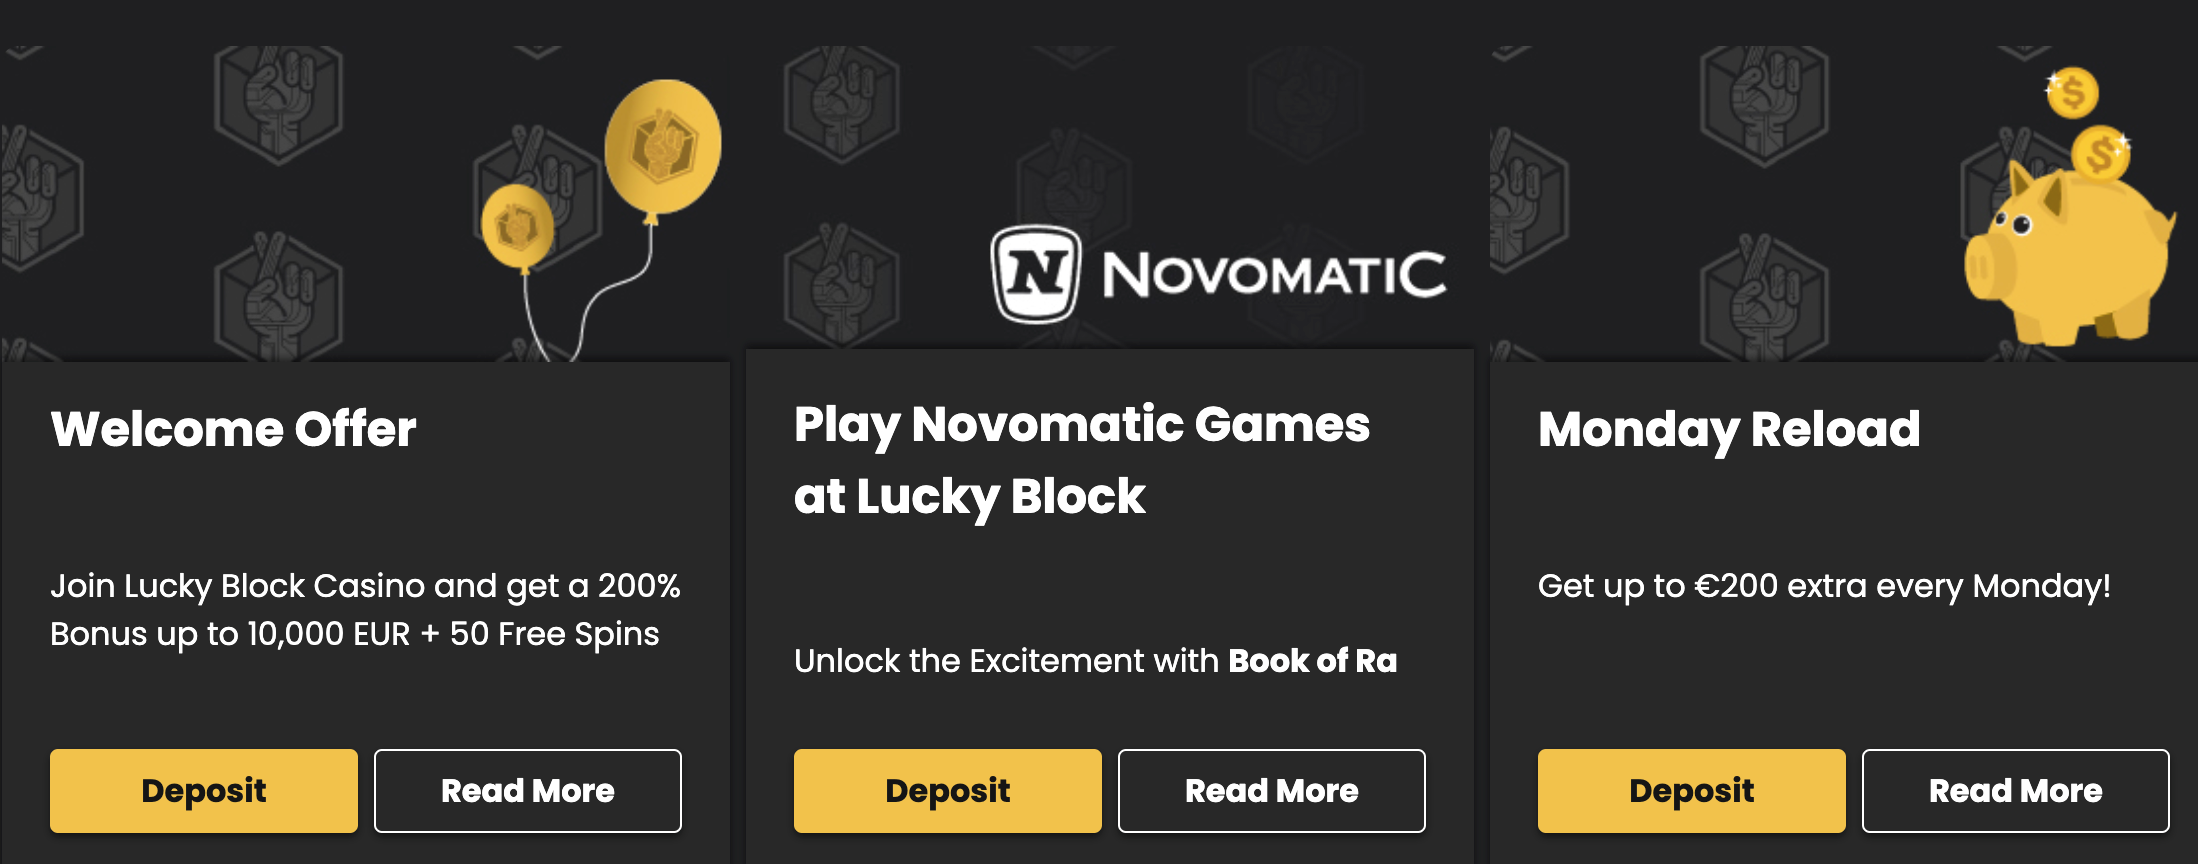 Lucky Block bonuses | DeviceDaily.com